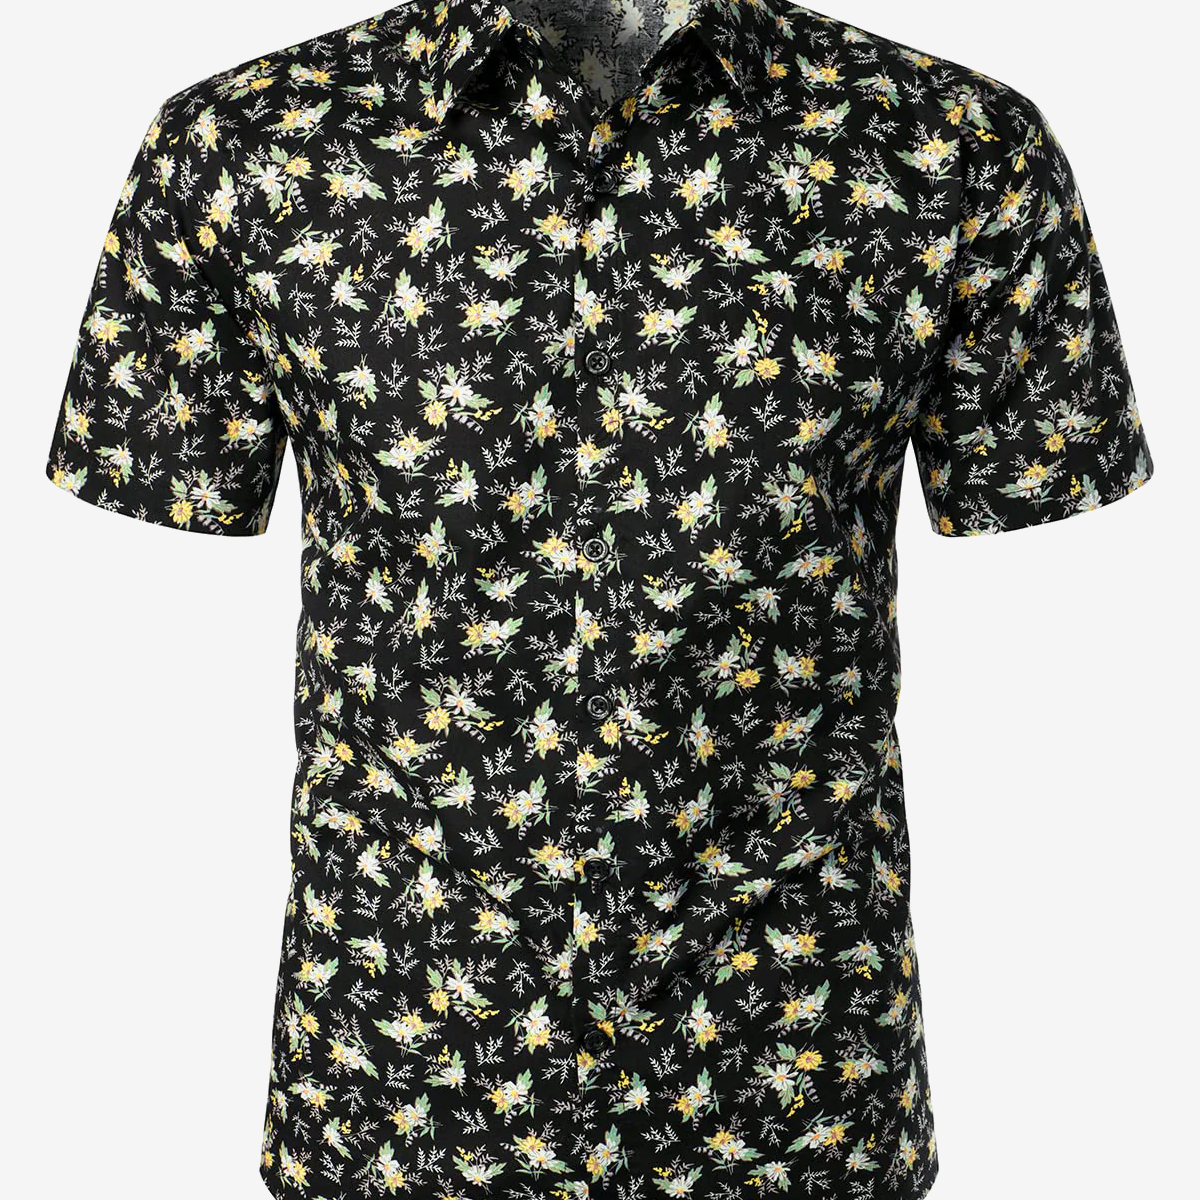 Camisa hawaiana de manga corta para hombre, transpirable, con estampado floral, de algodón negro